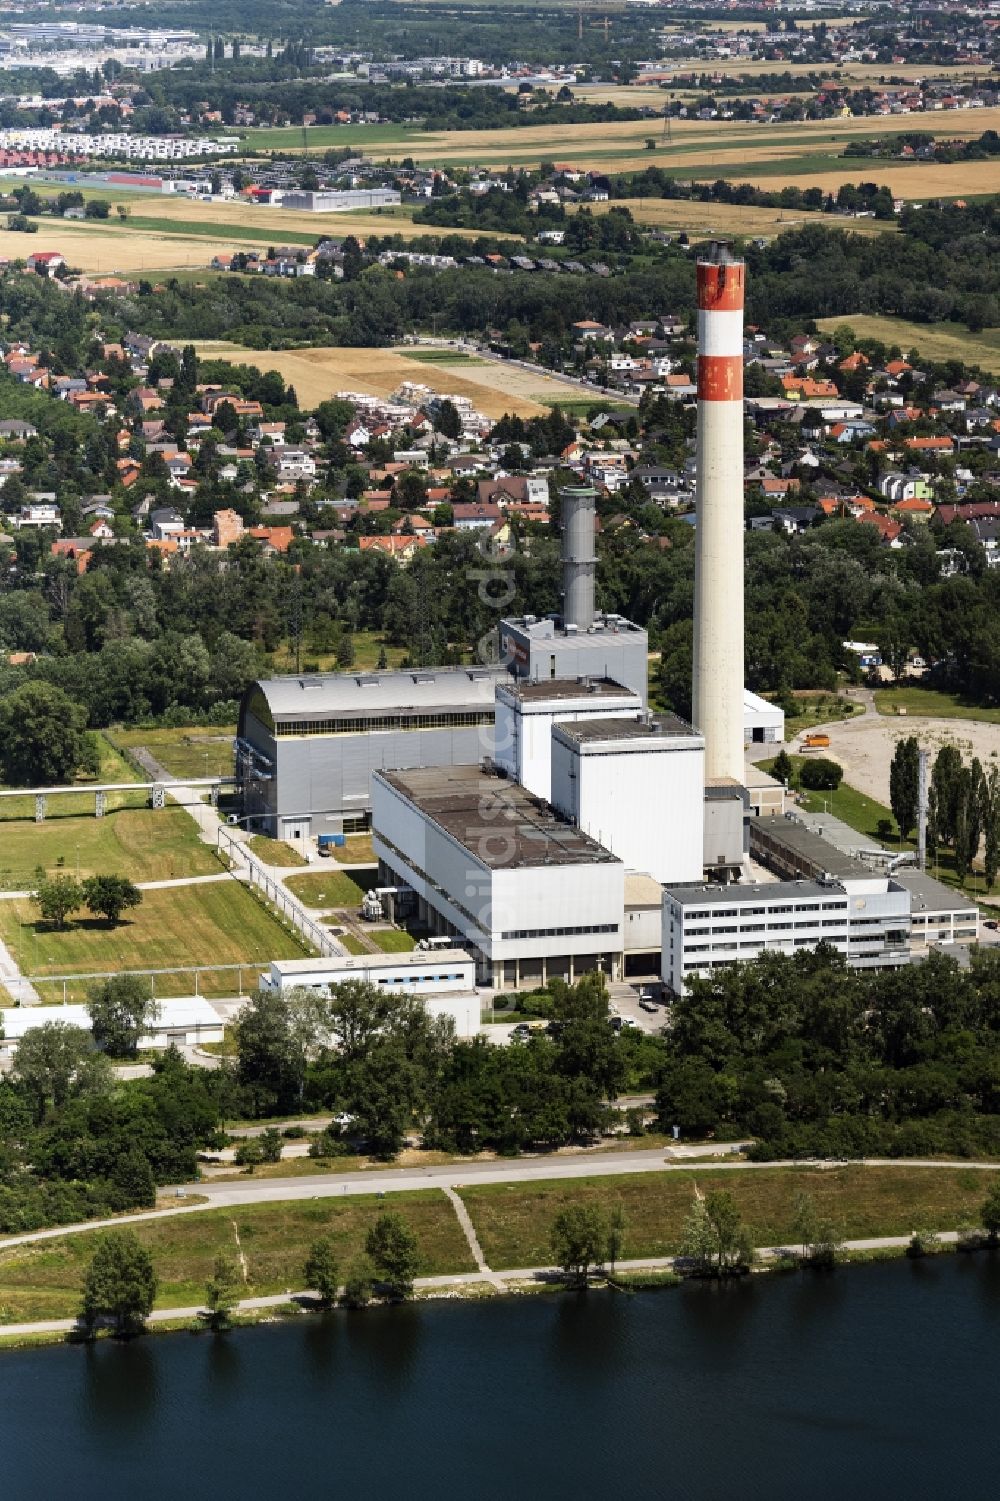 Wien von oben - Kraftwerksanlagen des Heizkraftwerkes KWK-Kraftwek Donaustadt in Wien in Österreich